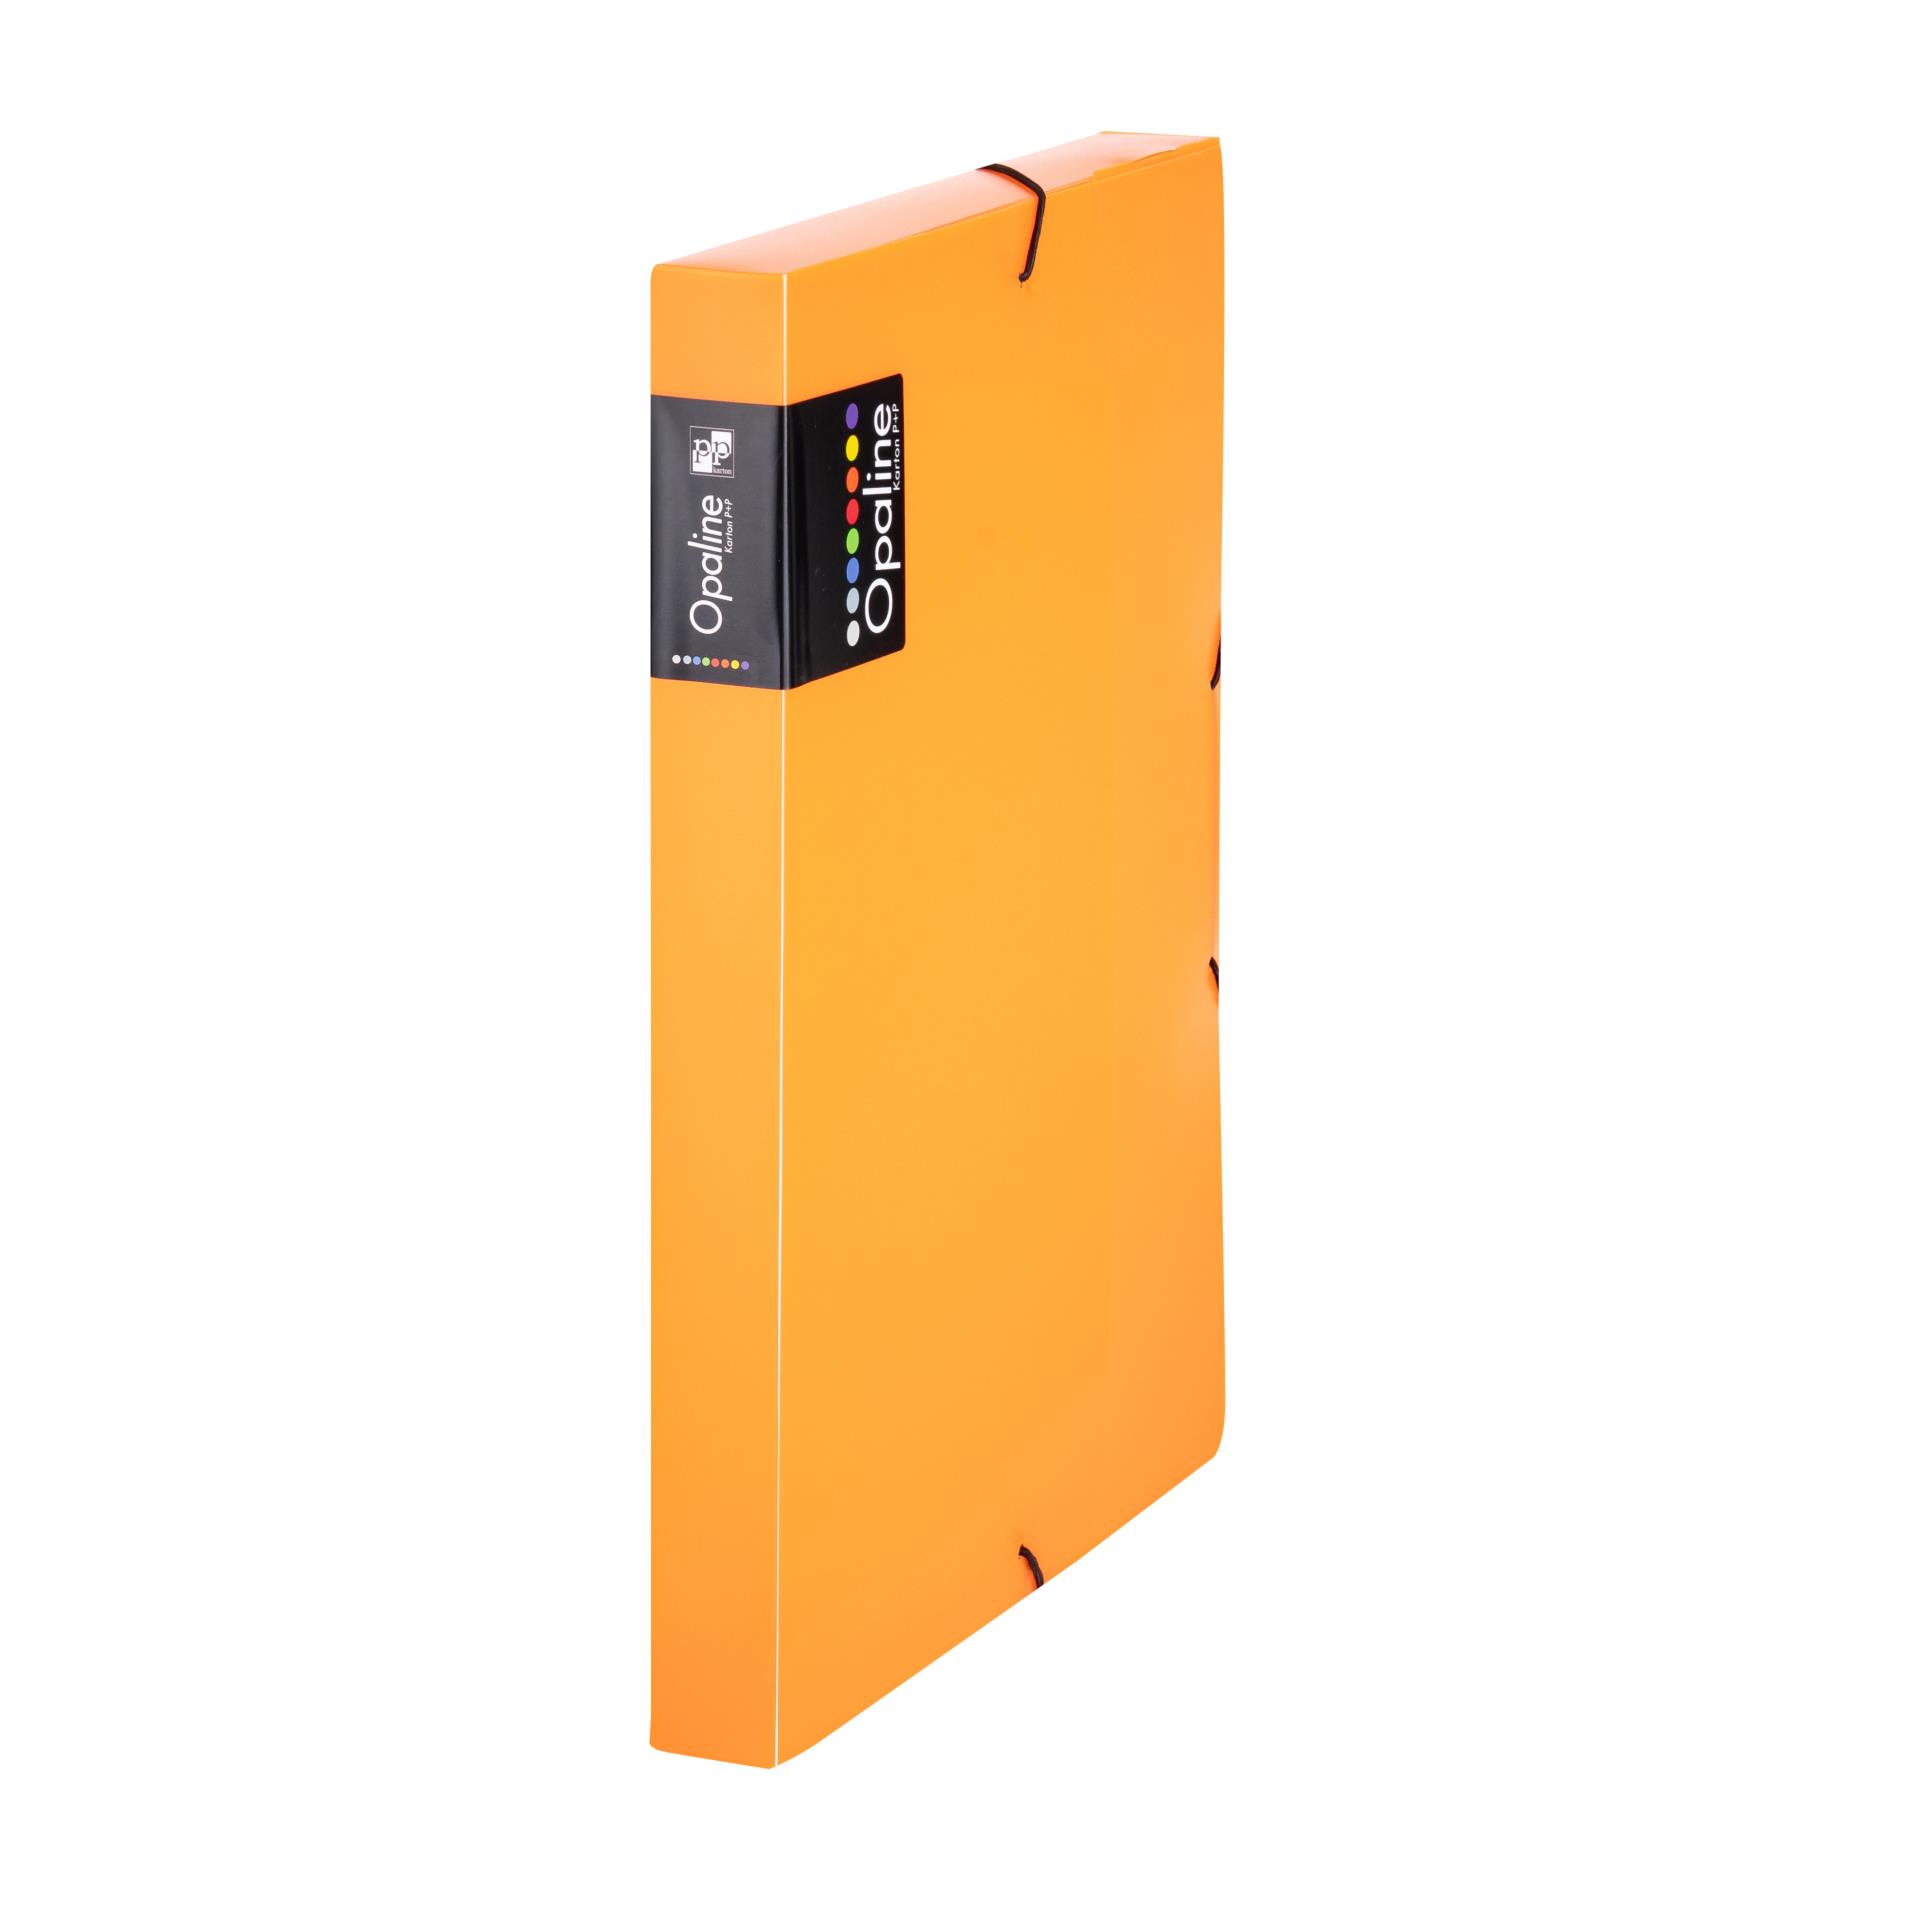 Karton P+P Box plastový na spisy s gumičkou Opaline A4, transp. oranžový